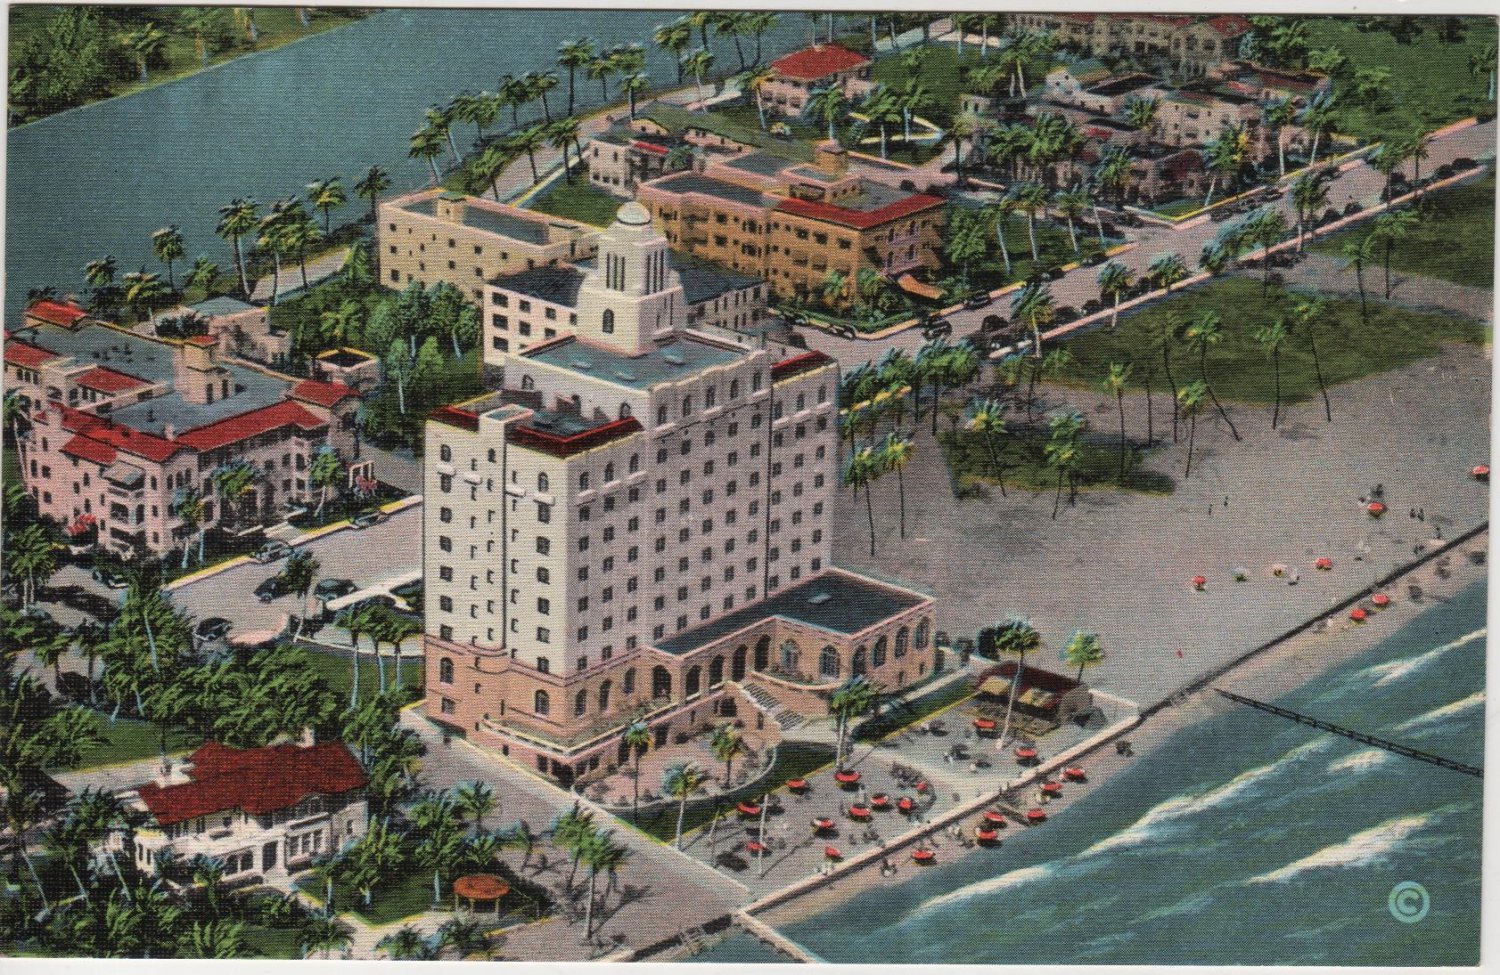 1947 MIAMI, FL, BOATWRIGHT HOTEL POSTCARD